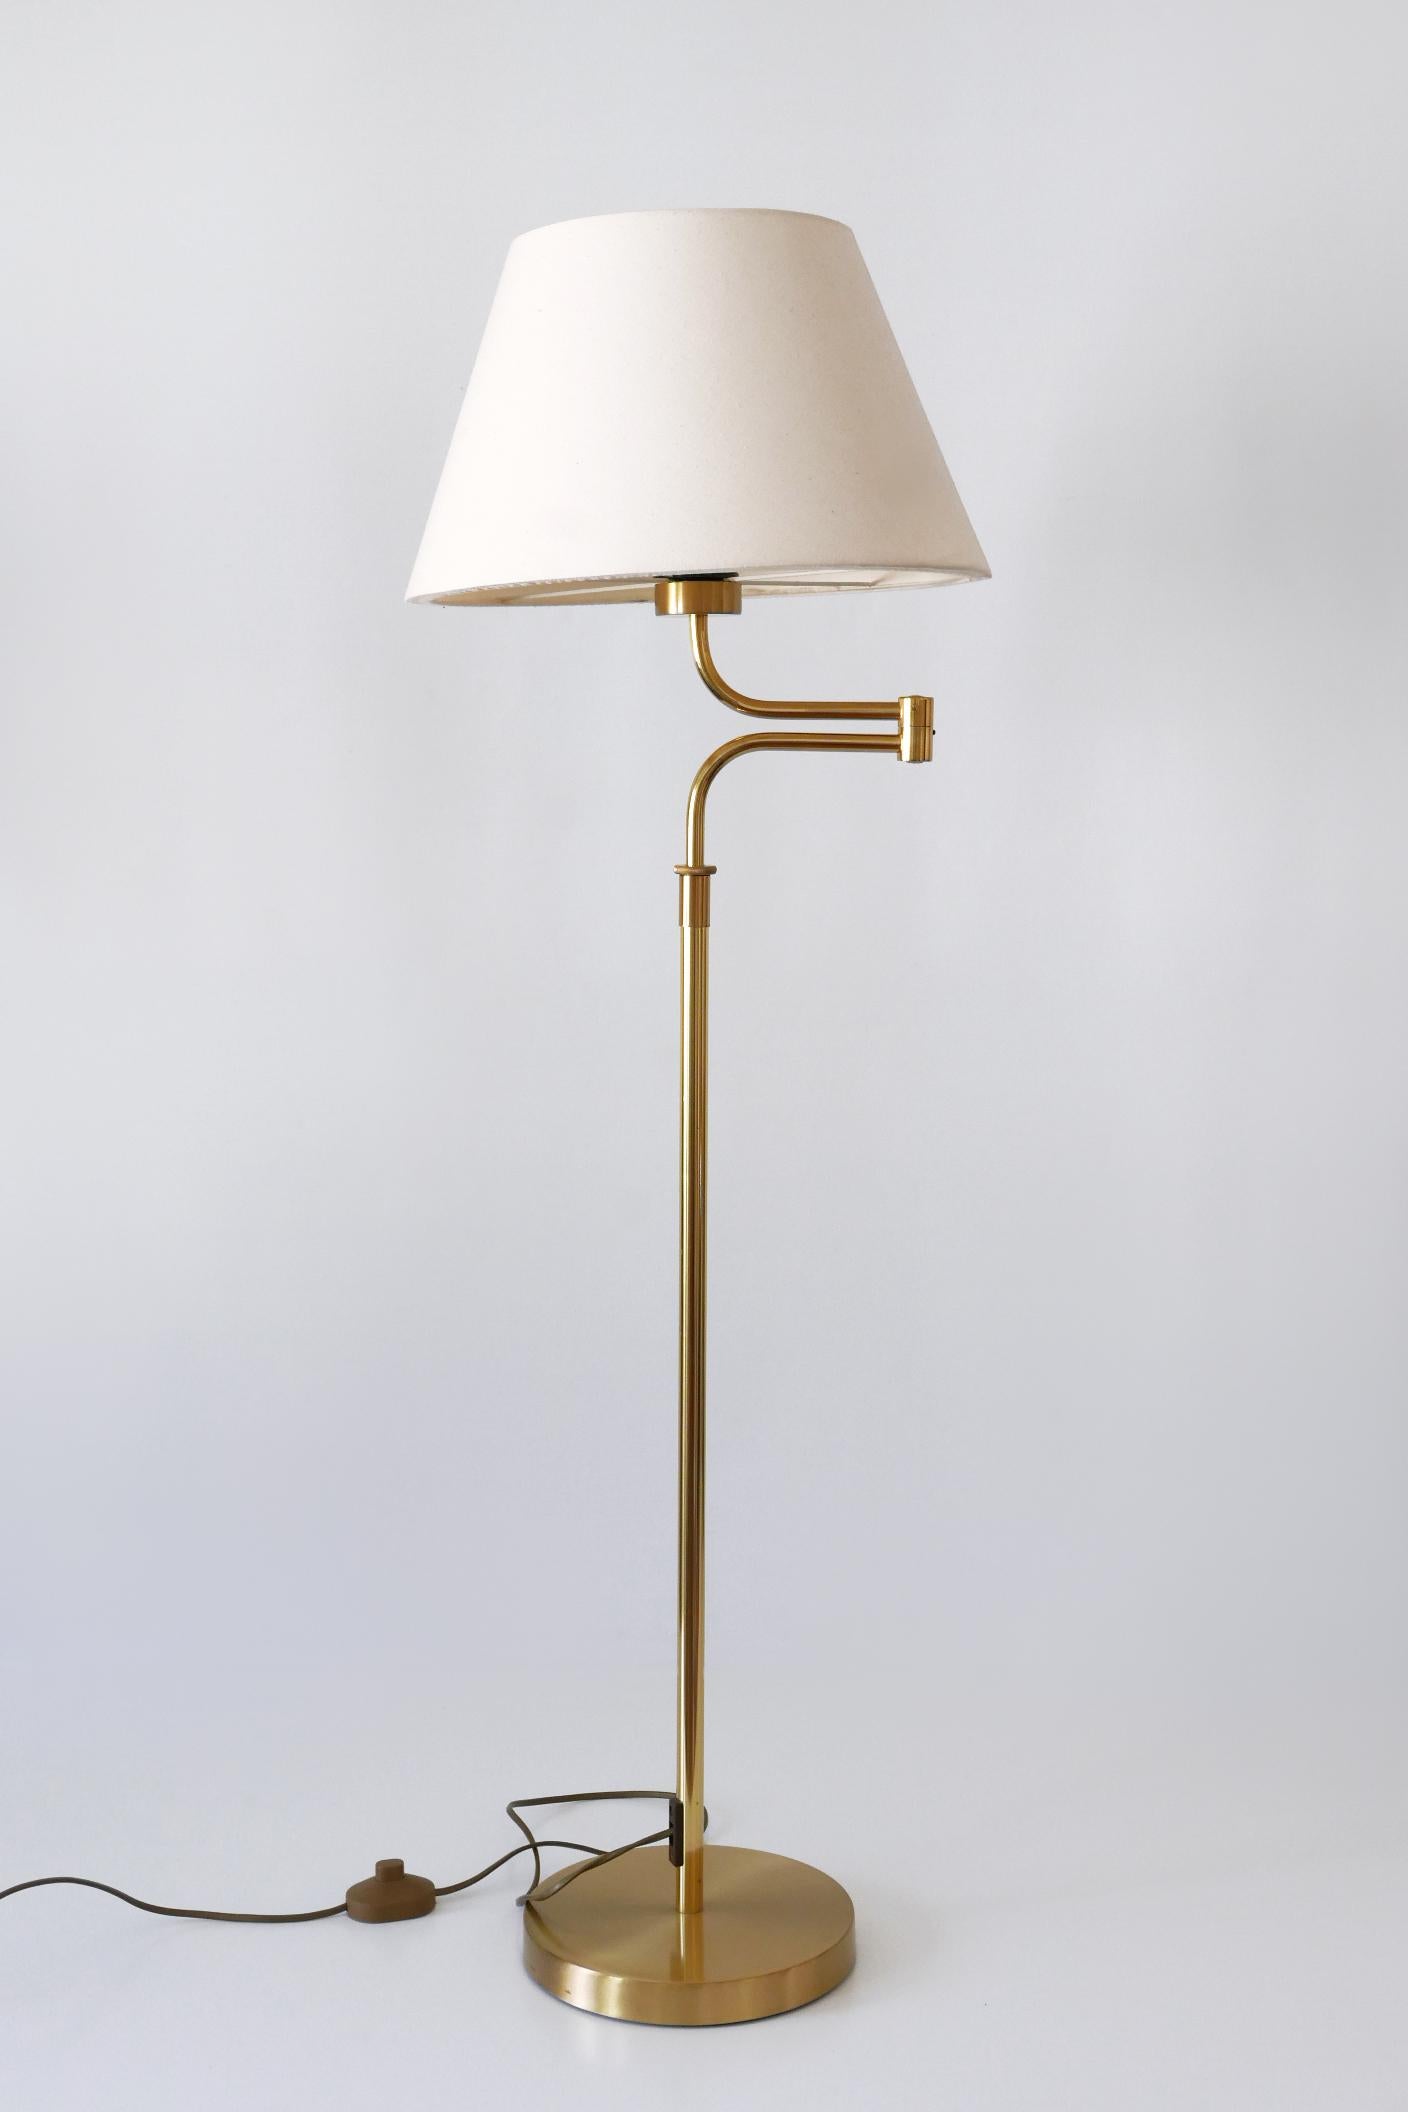 Adjustable Vintage Floor Lamp or Reading Light by Sölken Leuchten Germany 1980s For Sale 2